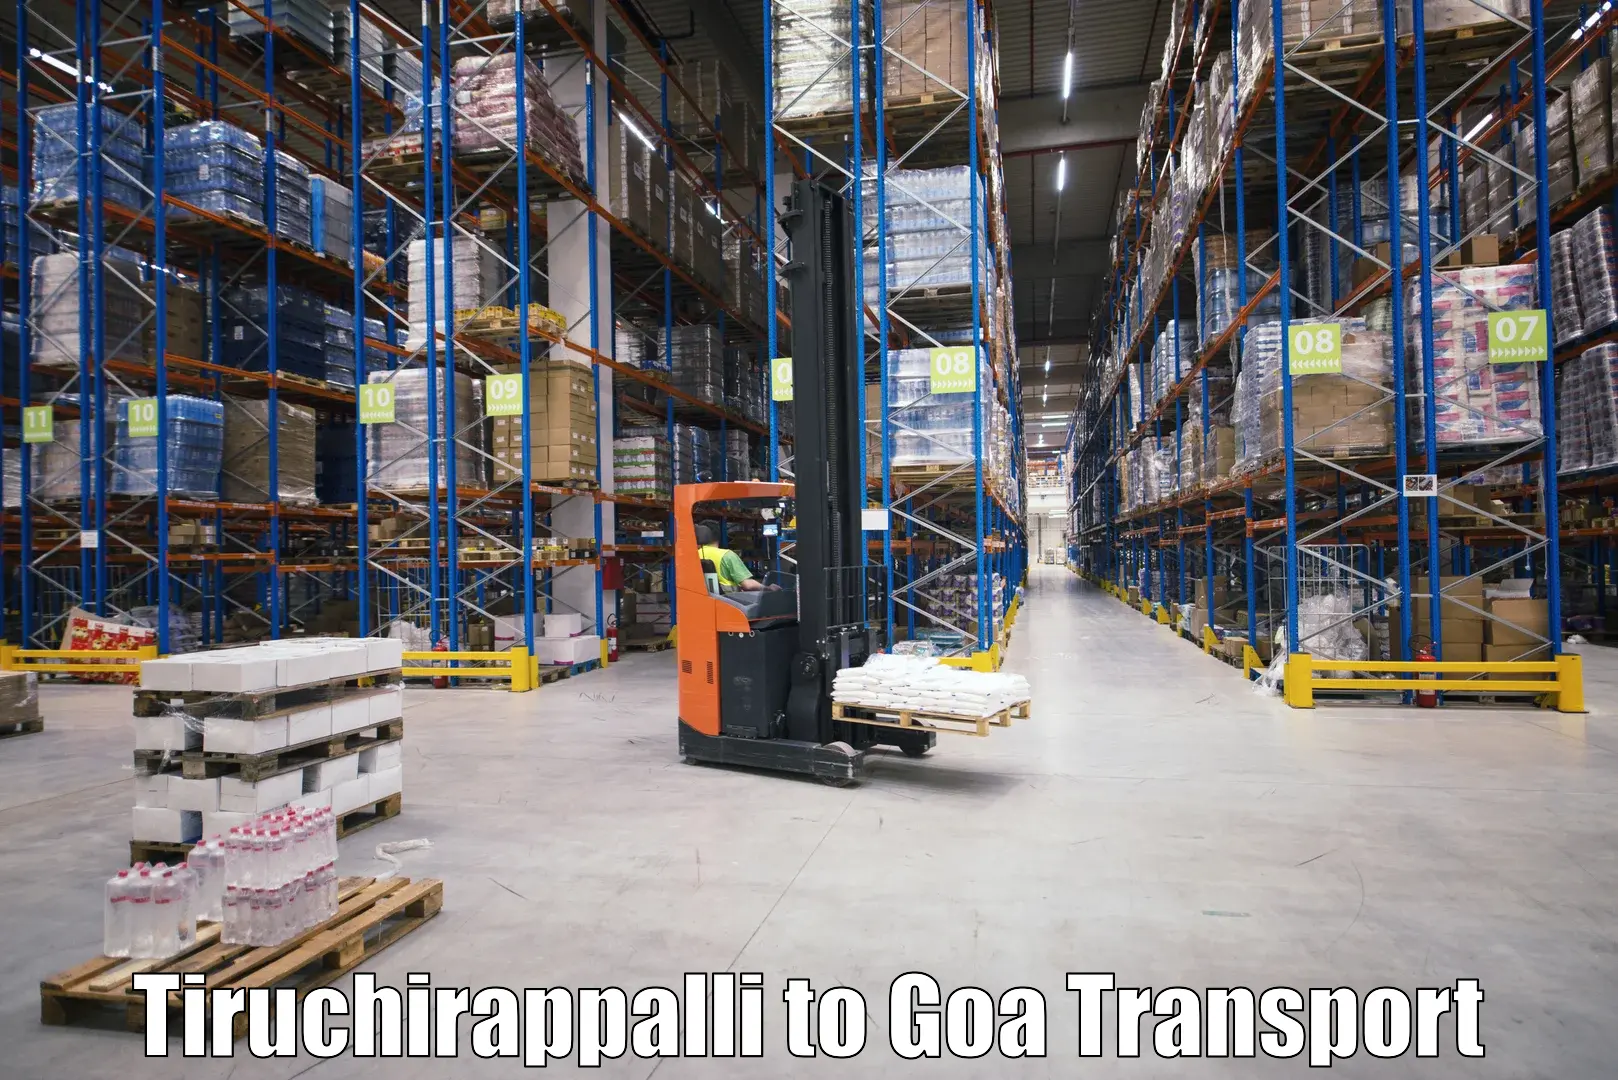 Cycle transportation service Tiruchirappalli to IIT Goa